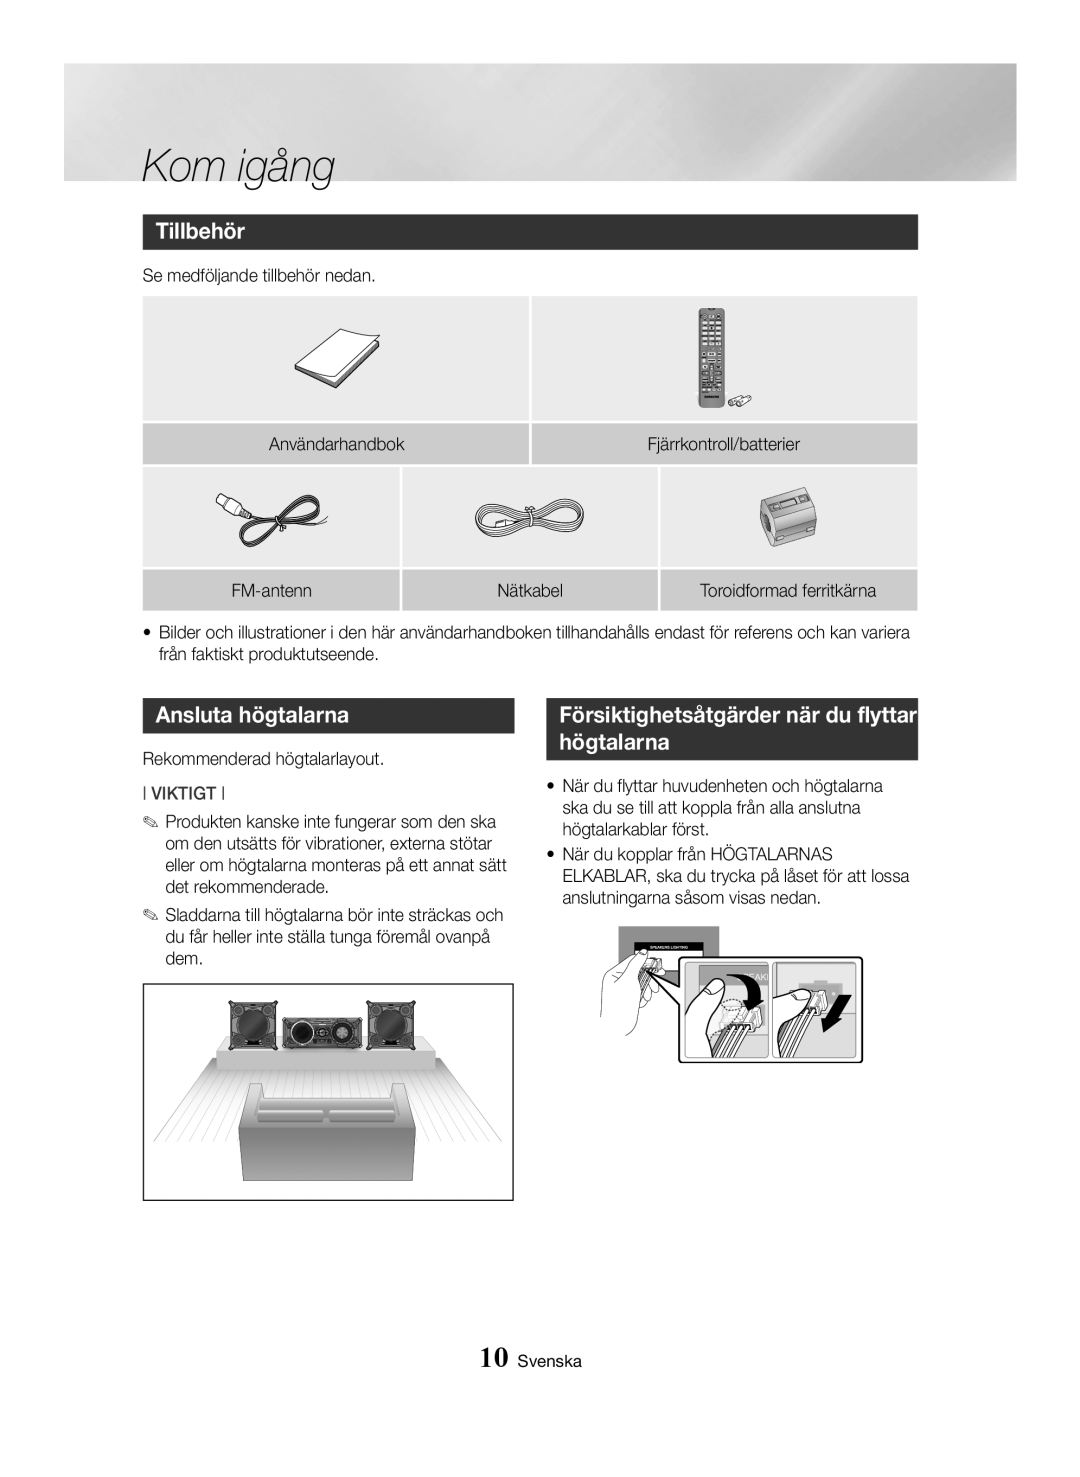 Samsung MX-HS8000/EN manual Tillbehör, Ansluta högtalarna, Försiktighetsåtgärder när du flyttar högtalarna, Kom igång 